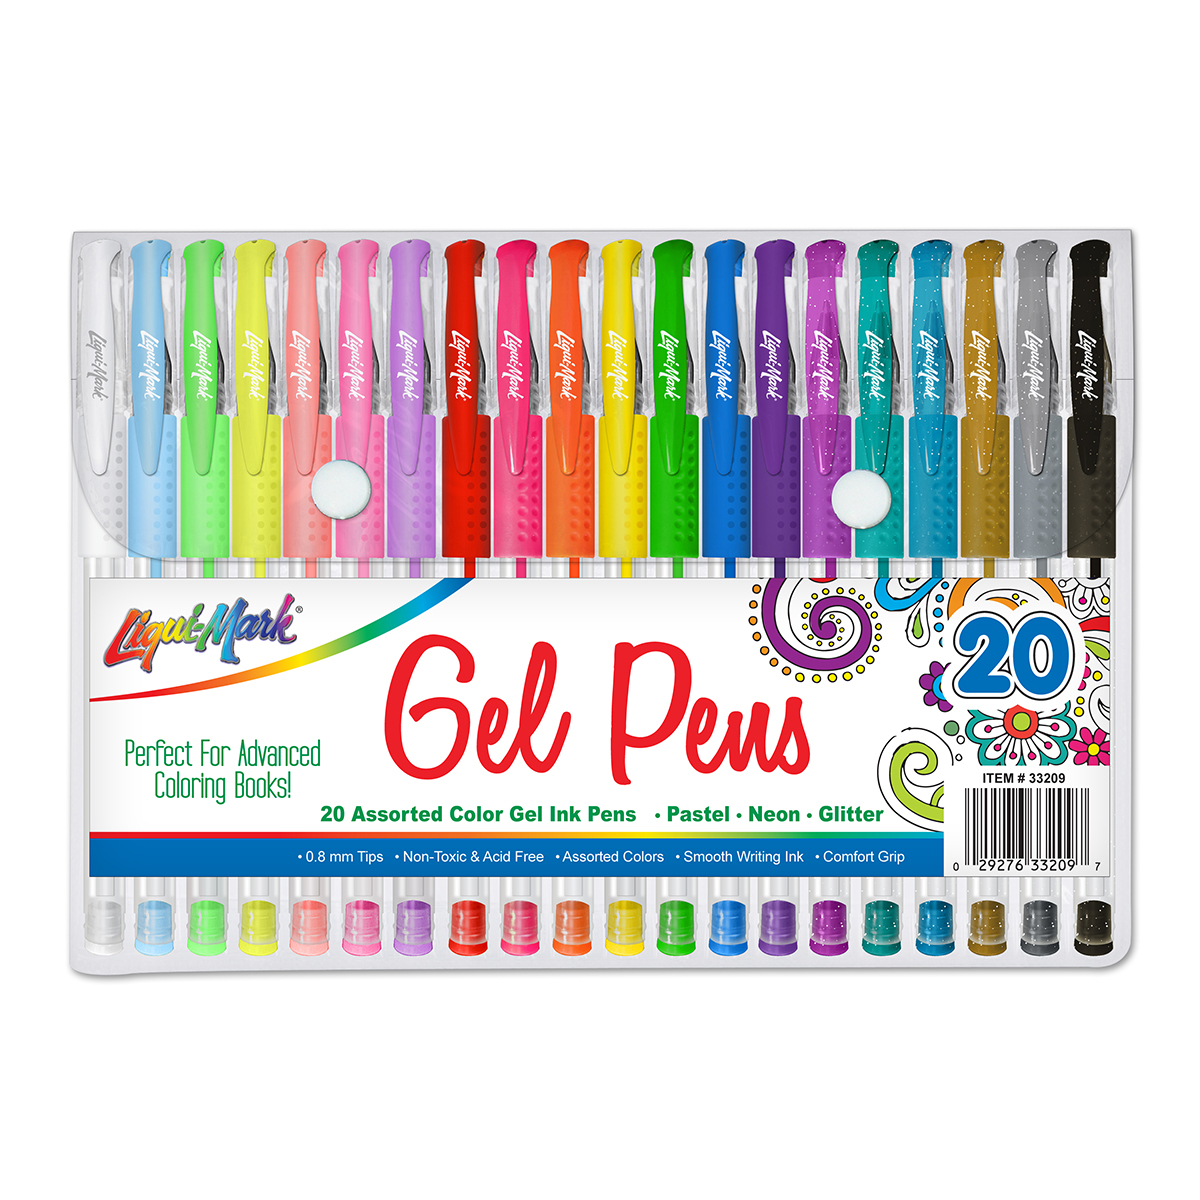 48 Colors Glitter Gel Pens for Adults Women Girls Kids Gel Pens Pen Set Art  Scho